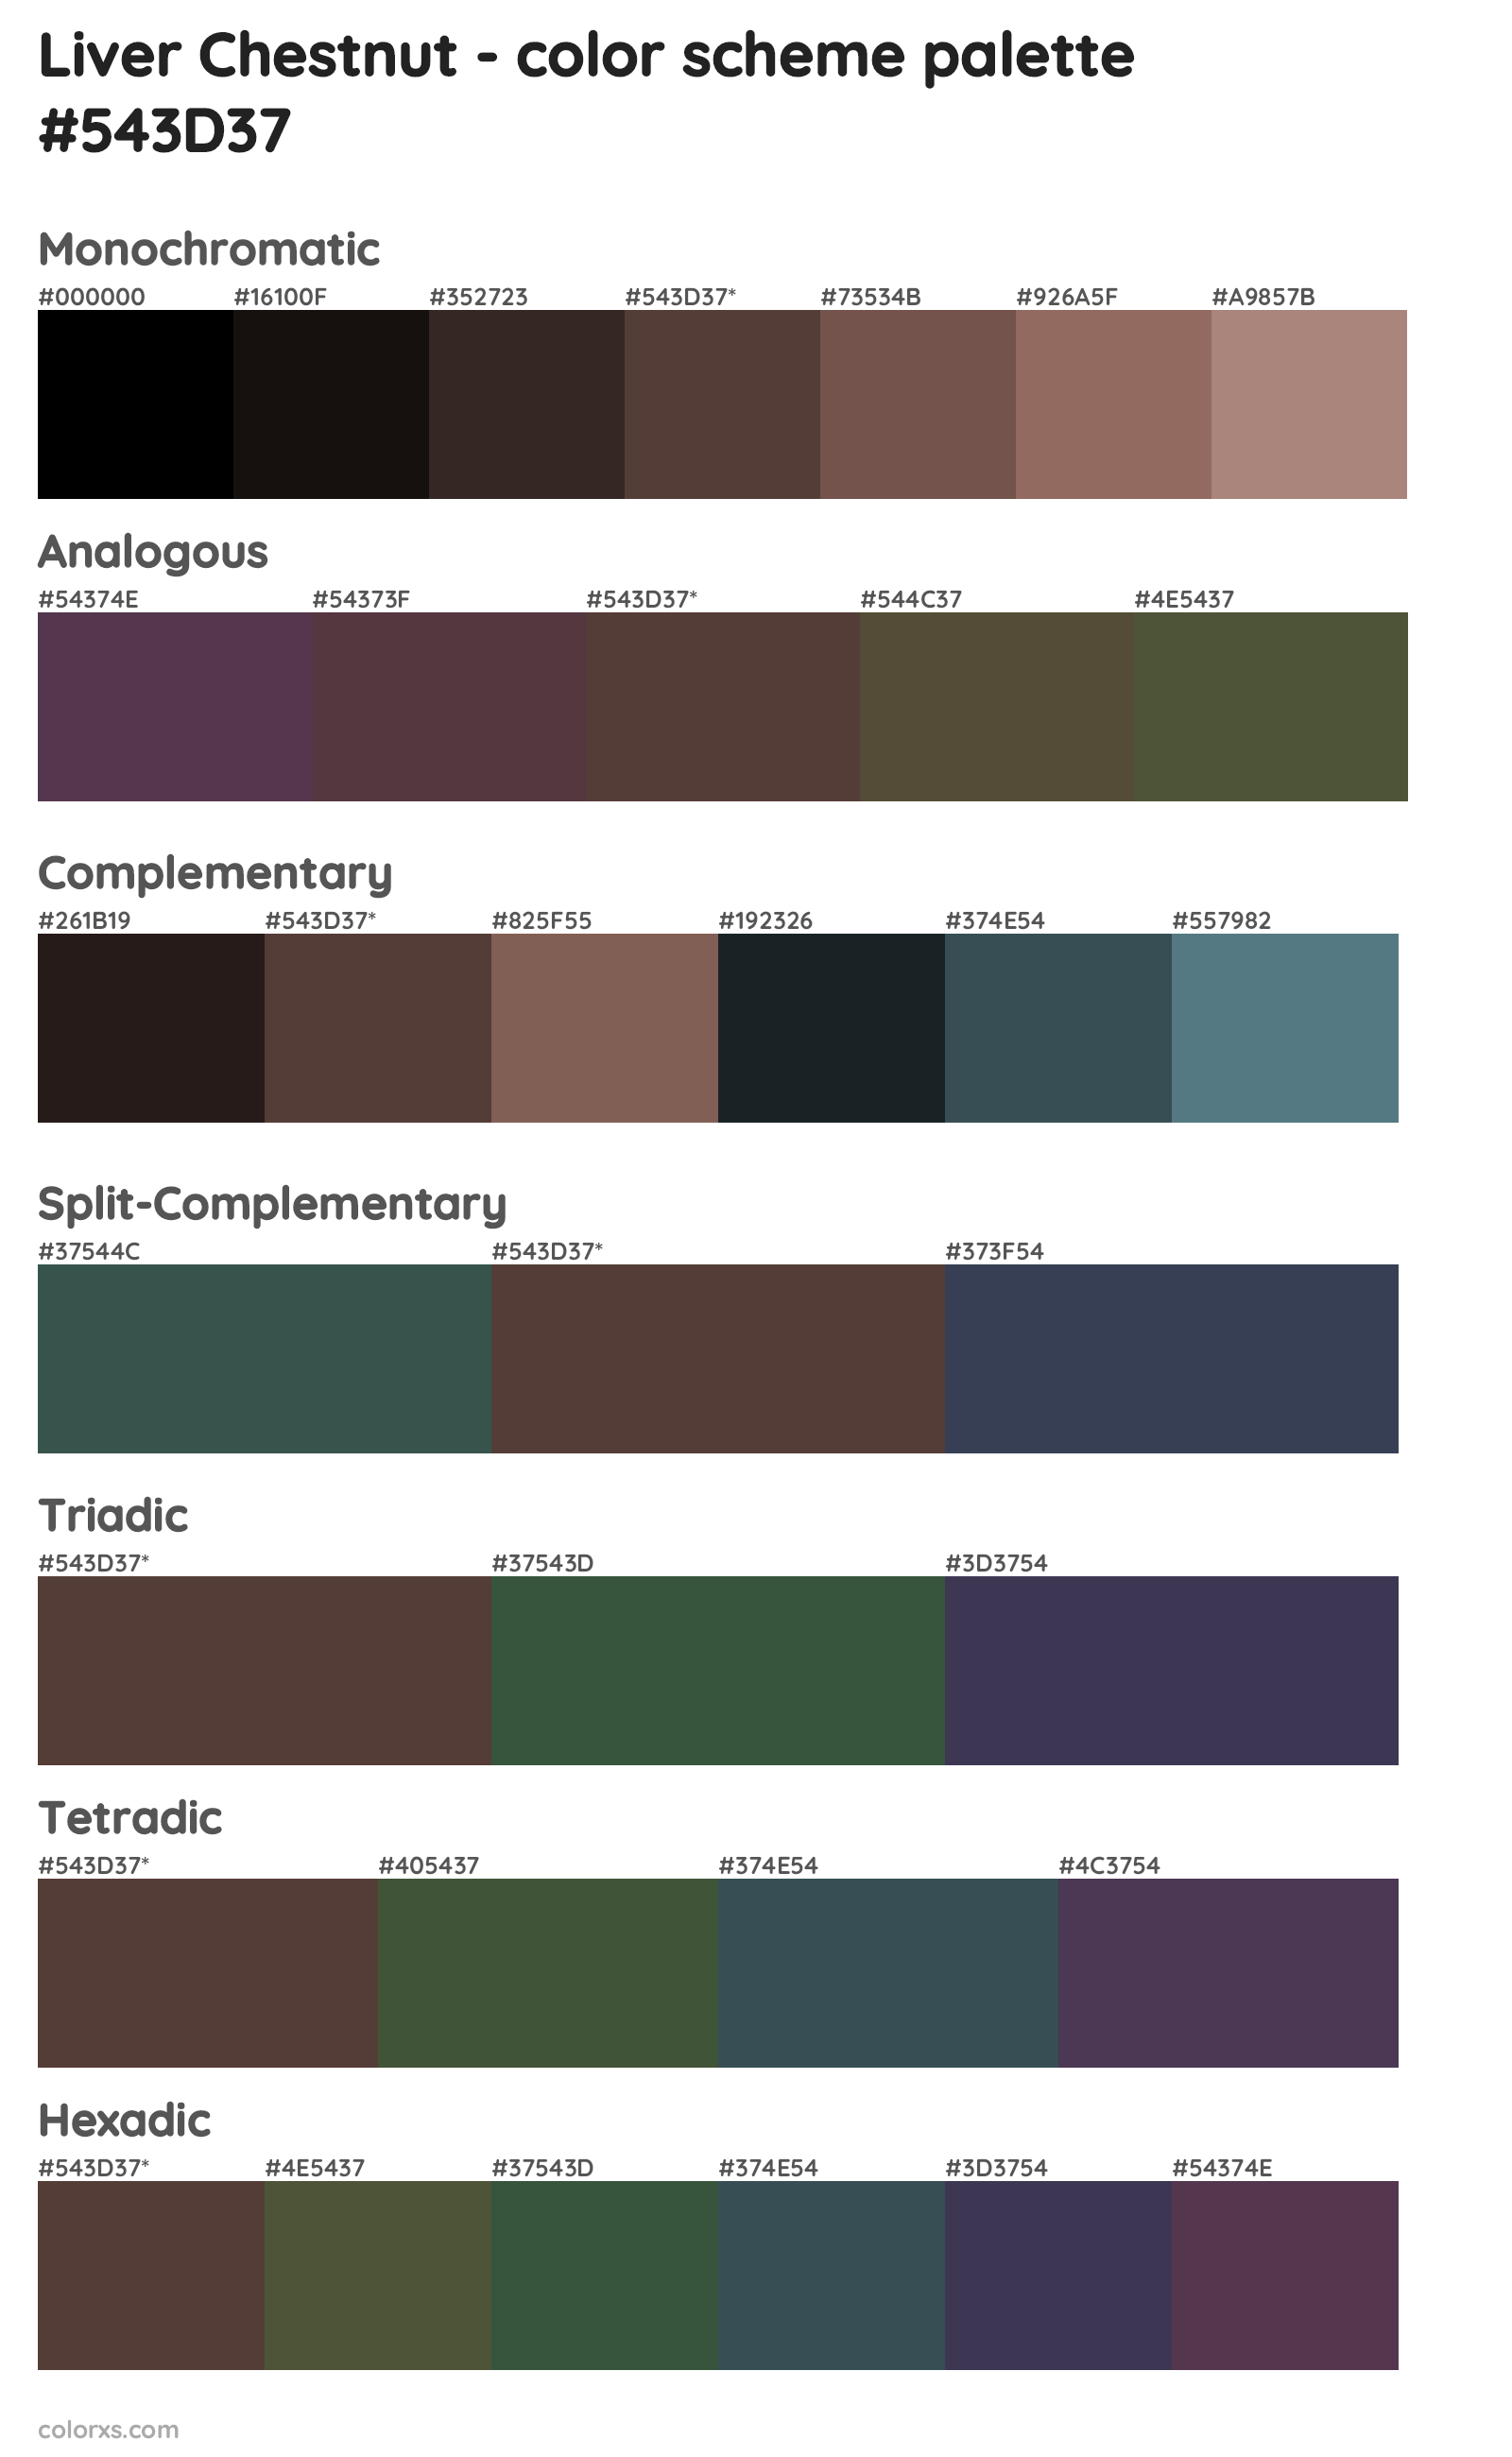 Liver Chestnut Color Scheme Palettes